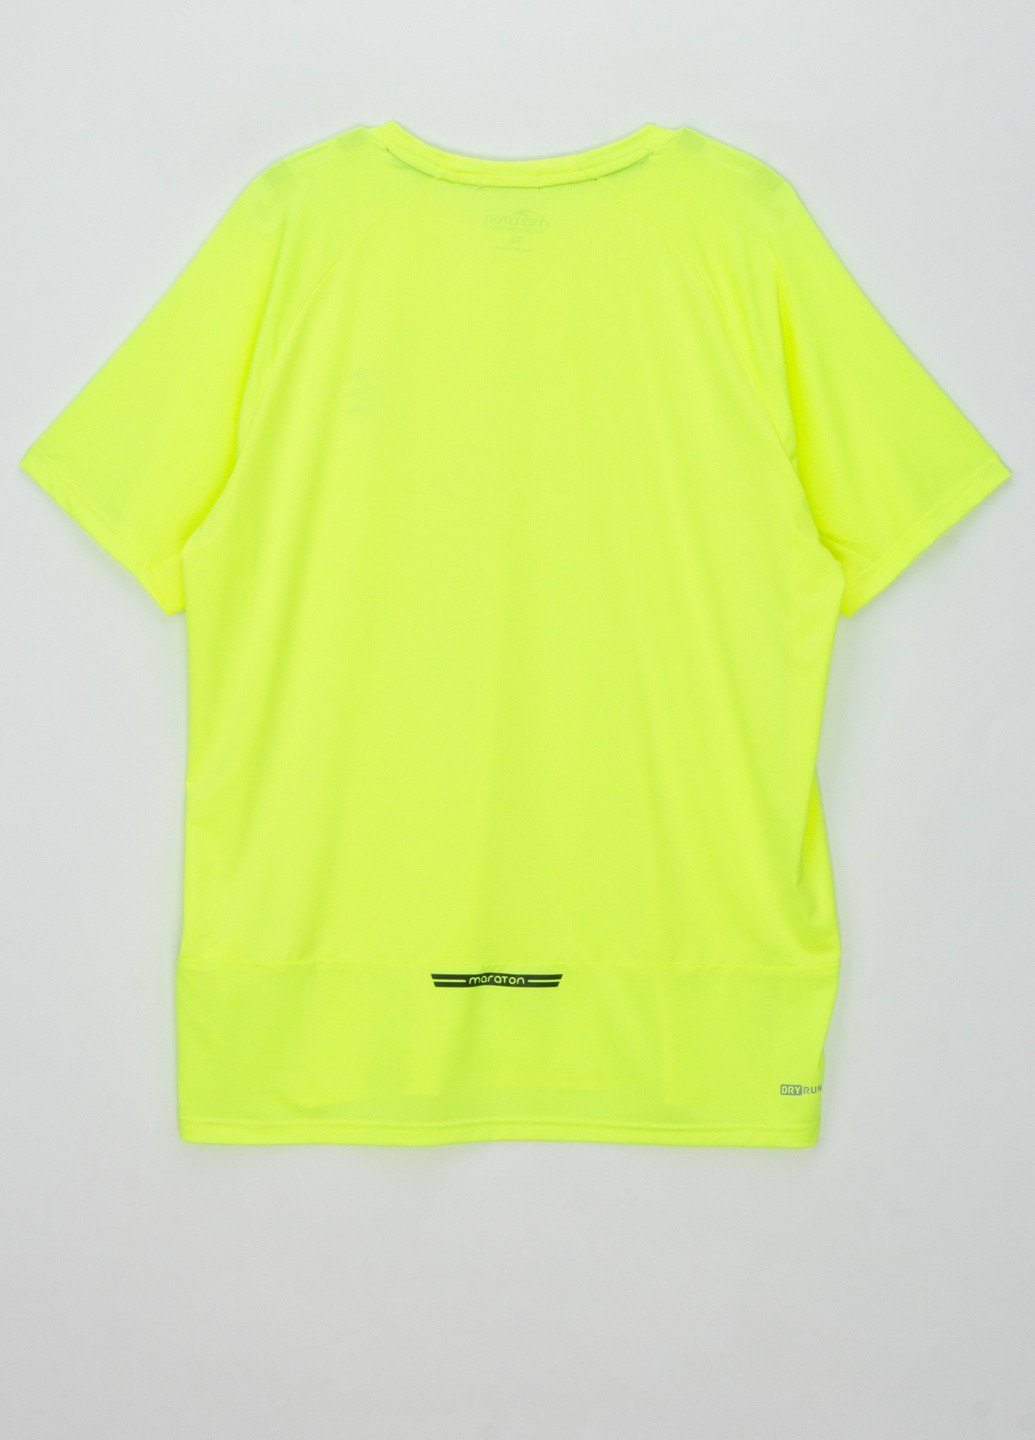 Салатовая футболка Maraton